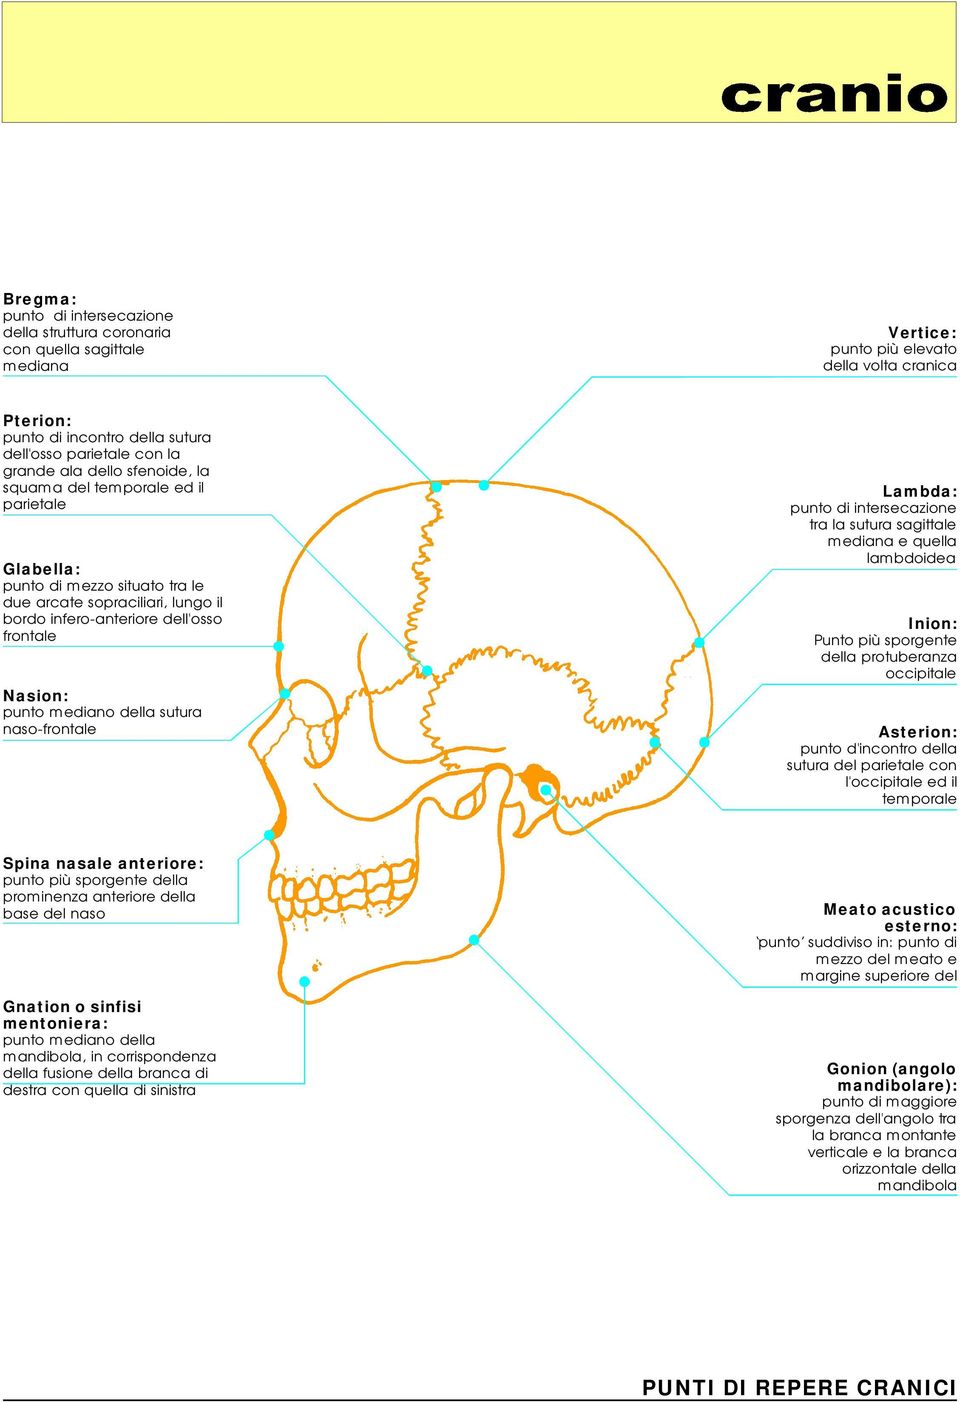 mediano della sutura naso-frontale Lambda: punto diintersecazione tra la sutura sagittale mediana equella lambdoidea Inion: Punto piùsporgente della protuberanza occipitale Asterion: punto d'incontro